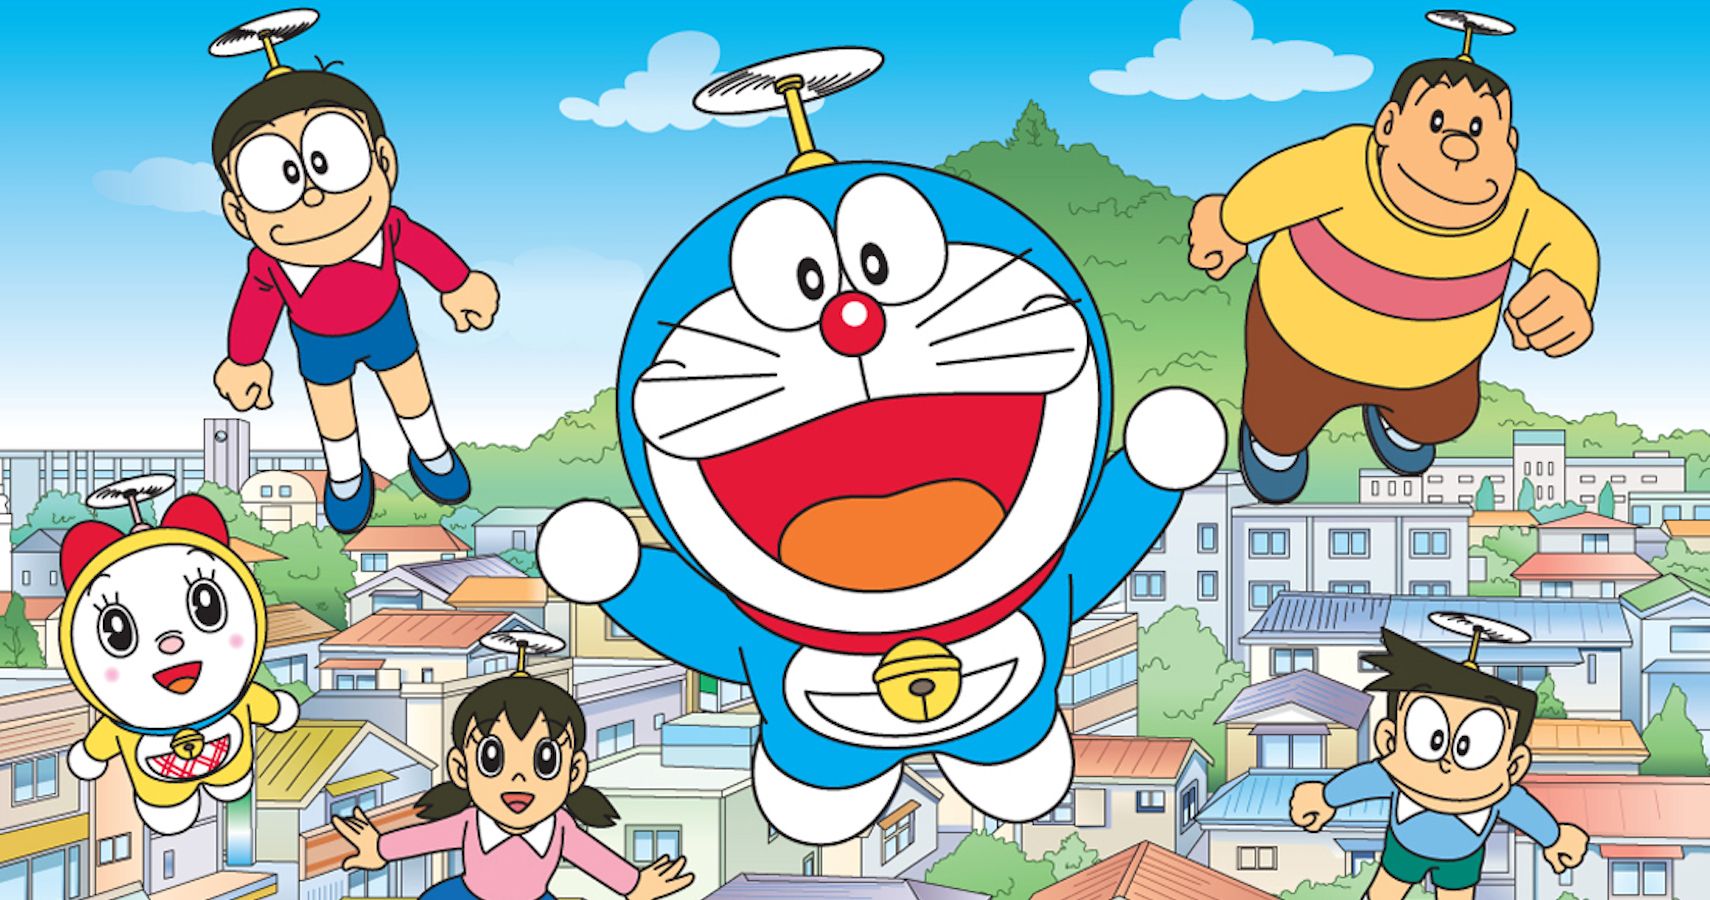 Thưởng thức Doraemon games là một trải nghiệm đáng nhớ cho mọi người! Hình ảnh liên quan sẽ mang đến cho bạn những trò chơi vui nhộn và hấp dẫn với Doraemon và những người bạn đáng yêu của anh.